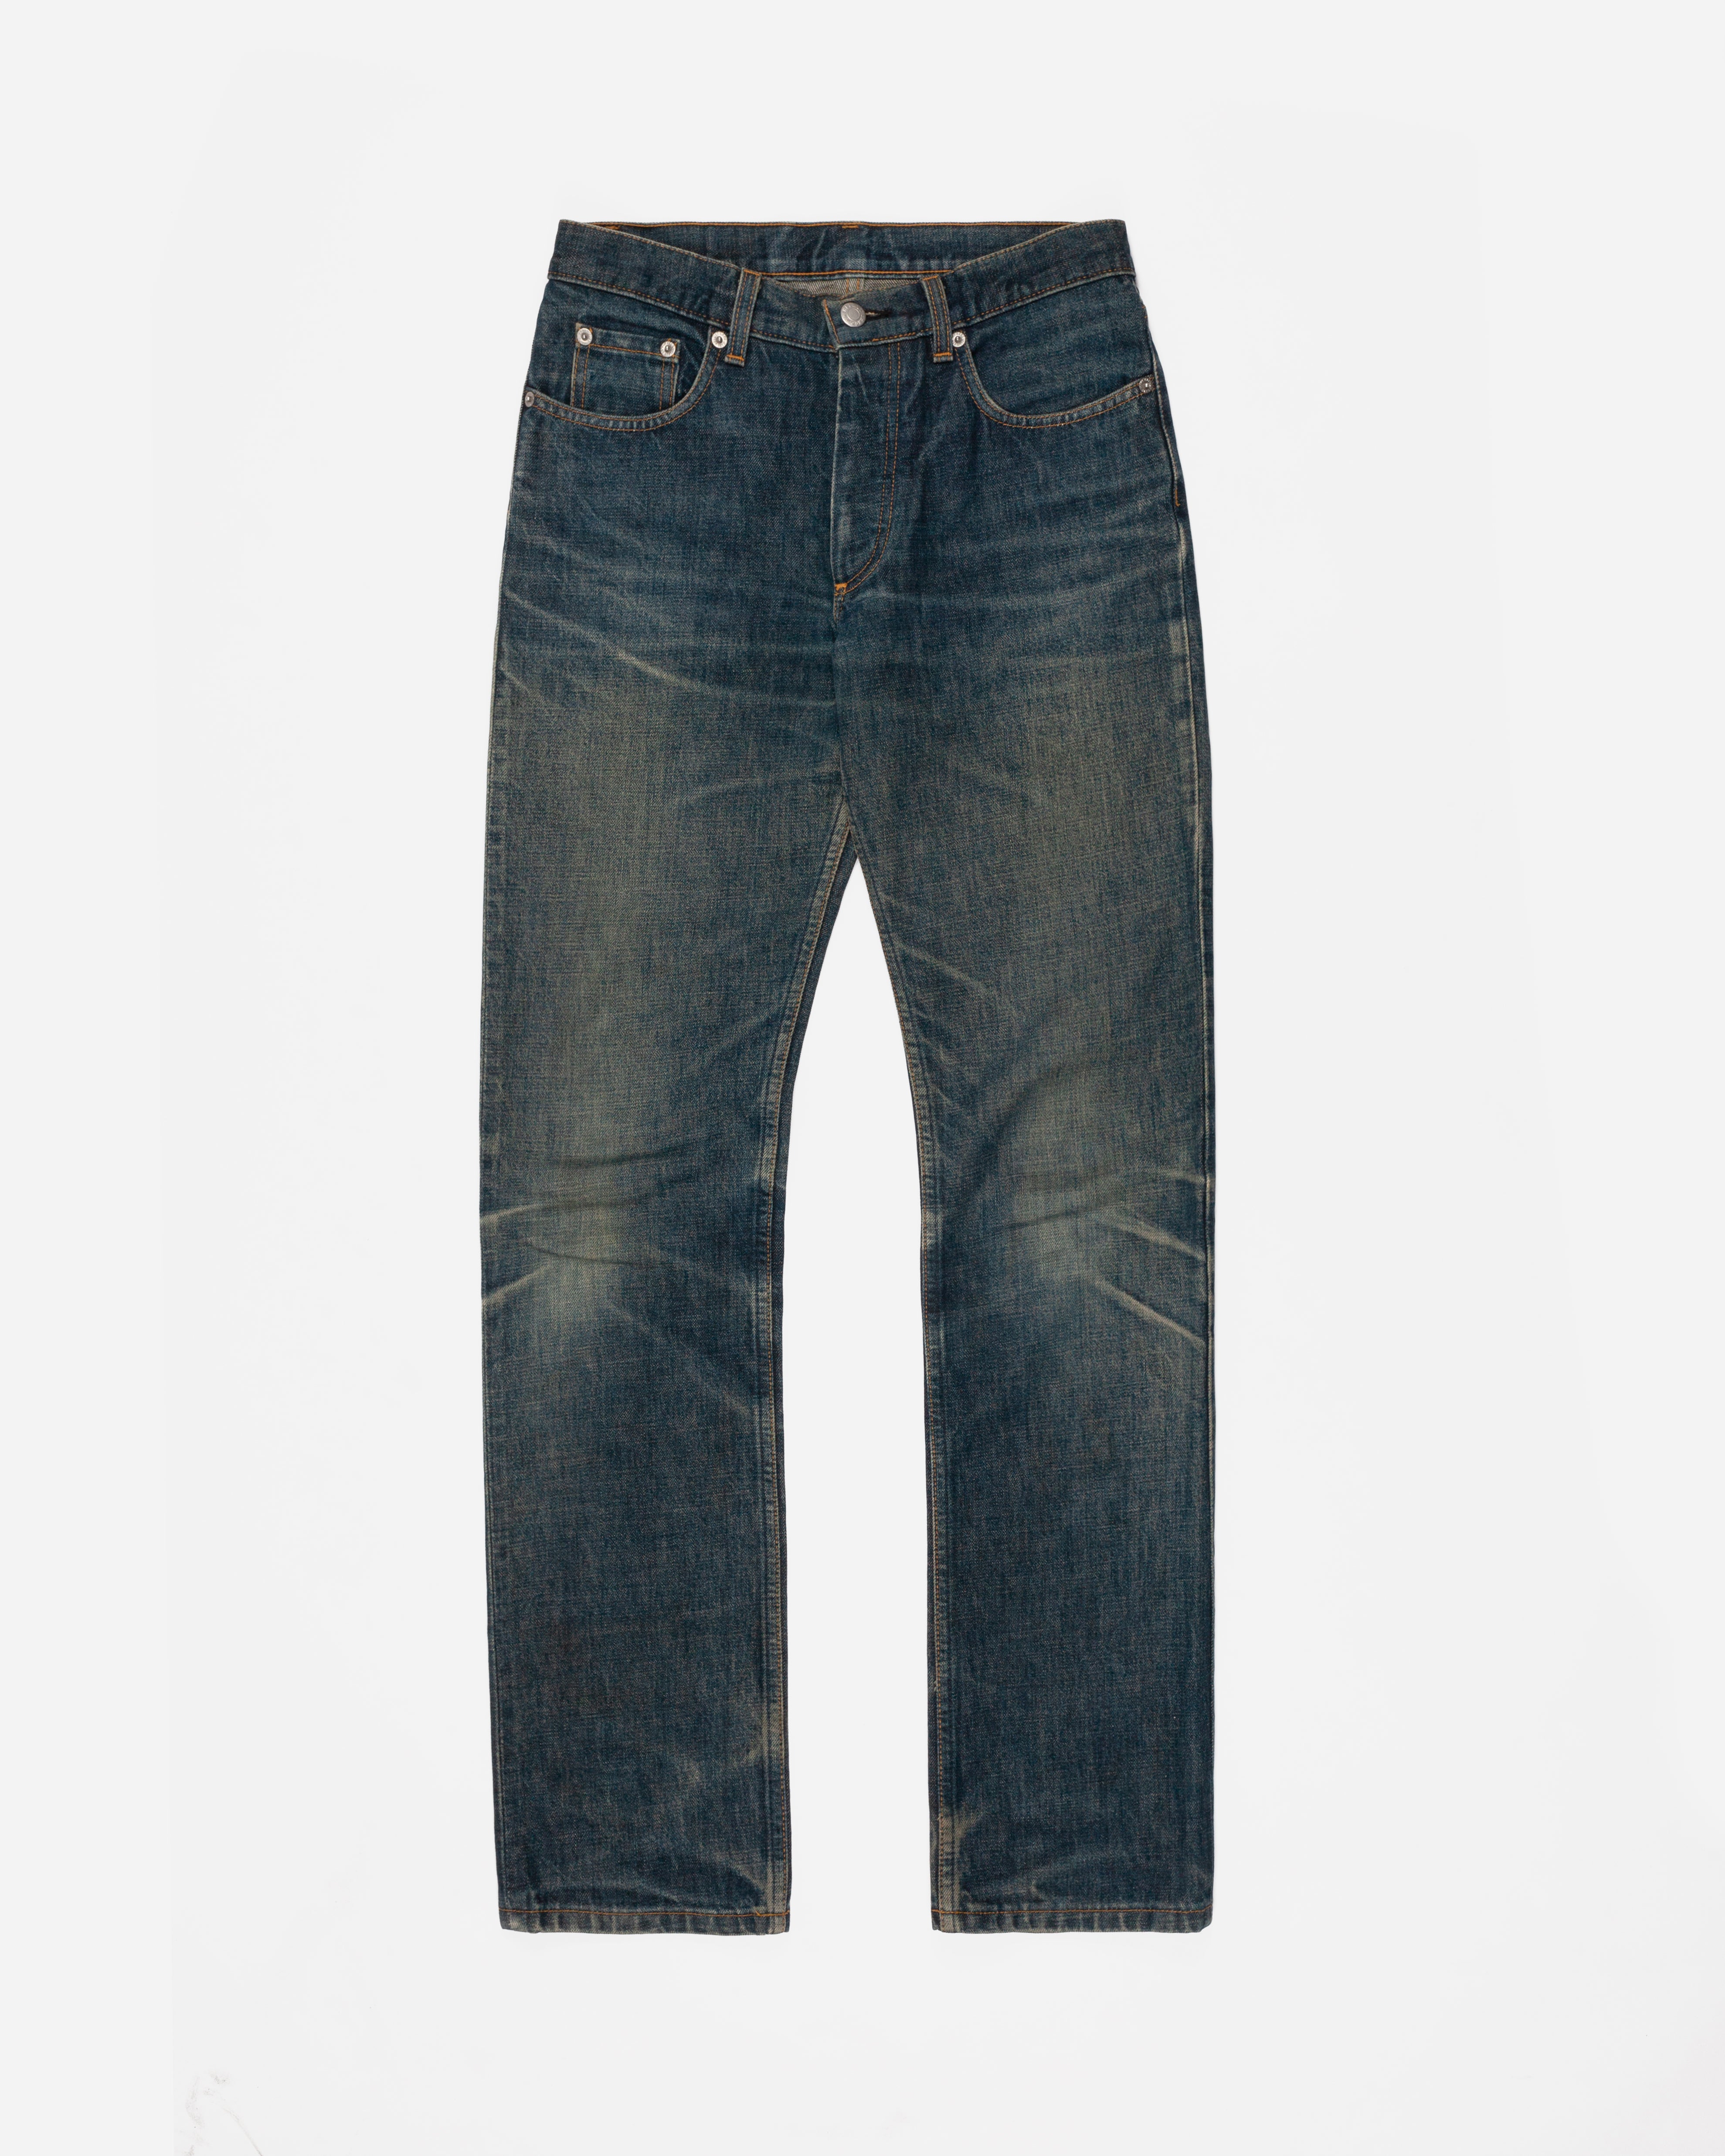 Helmut Lang Blue Dirt Wash Jeans - 1998 - SILVER LEAGUE